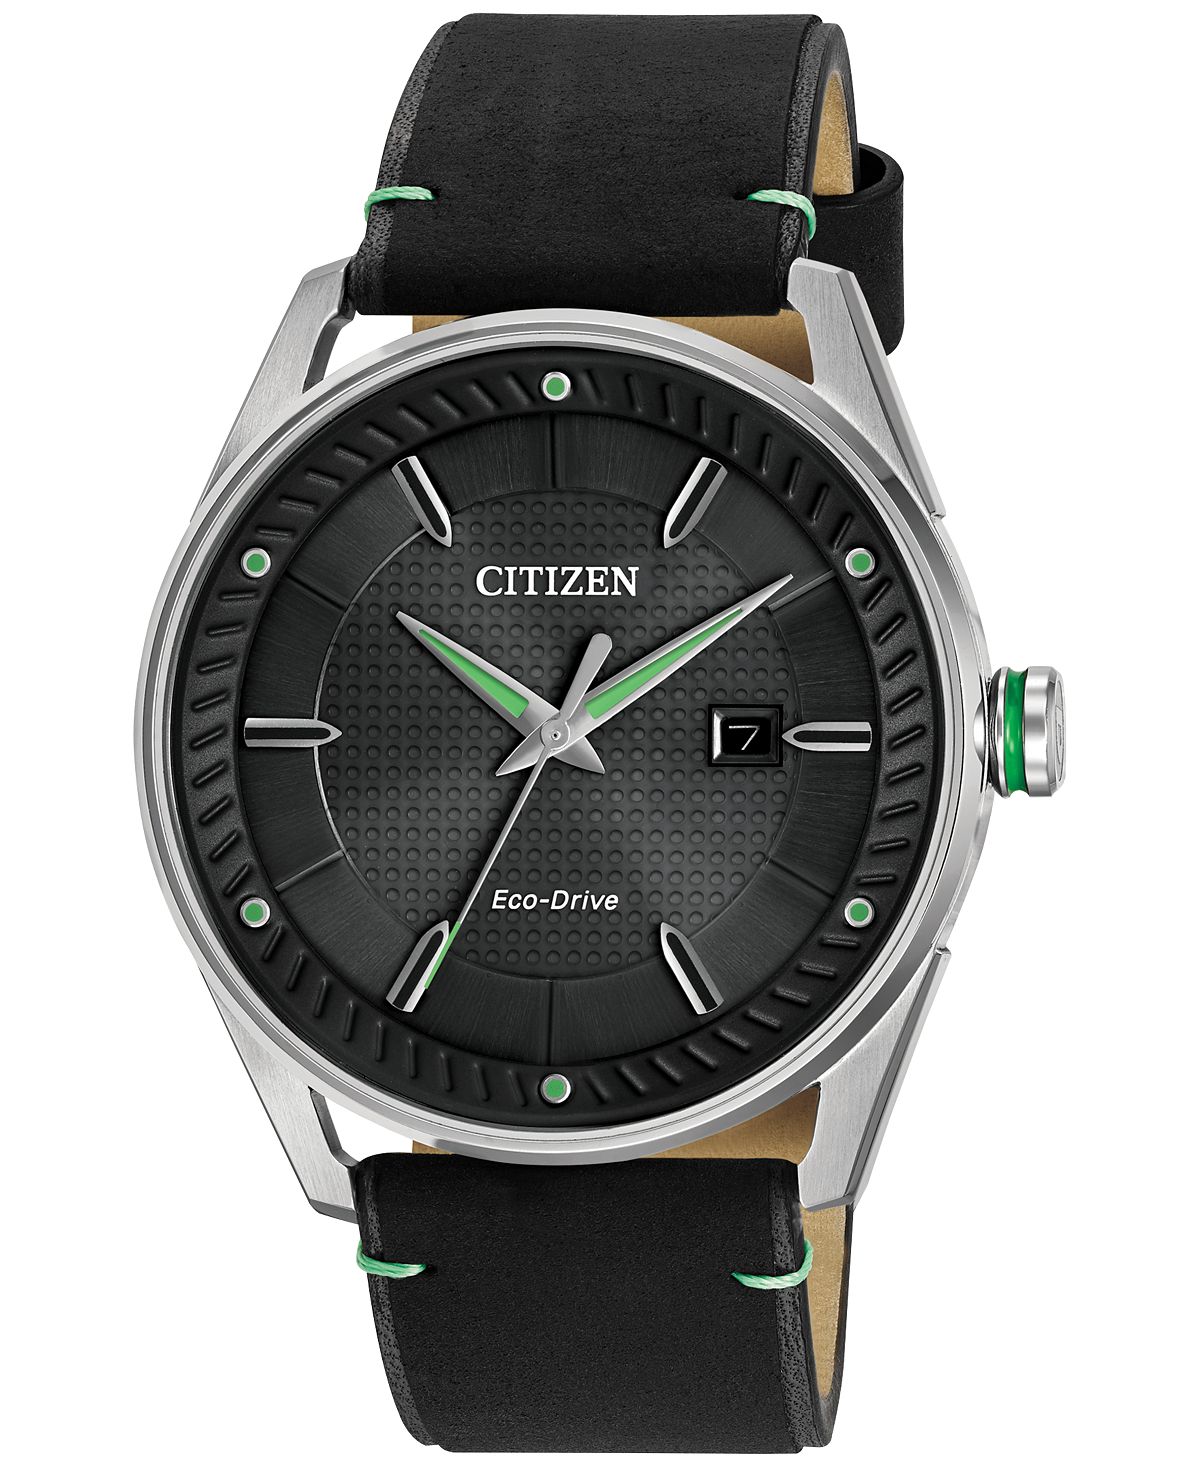 Мужские часы Drive from Citizen Eco-Drive, черный кожаный ремешок, 42 мм BM6980-08E часы citizen jp2000 08e